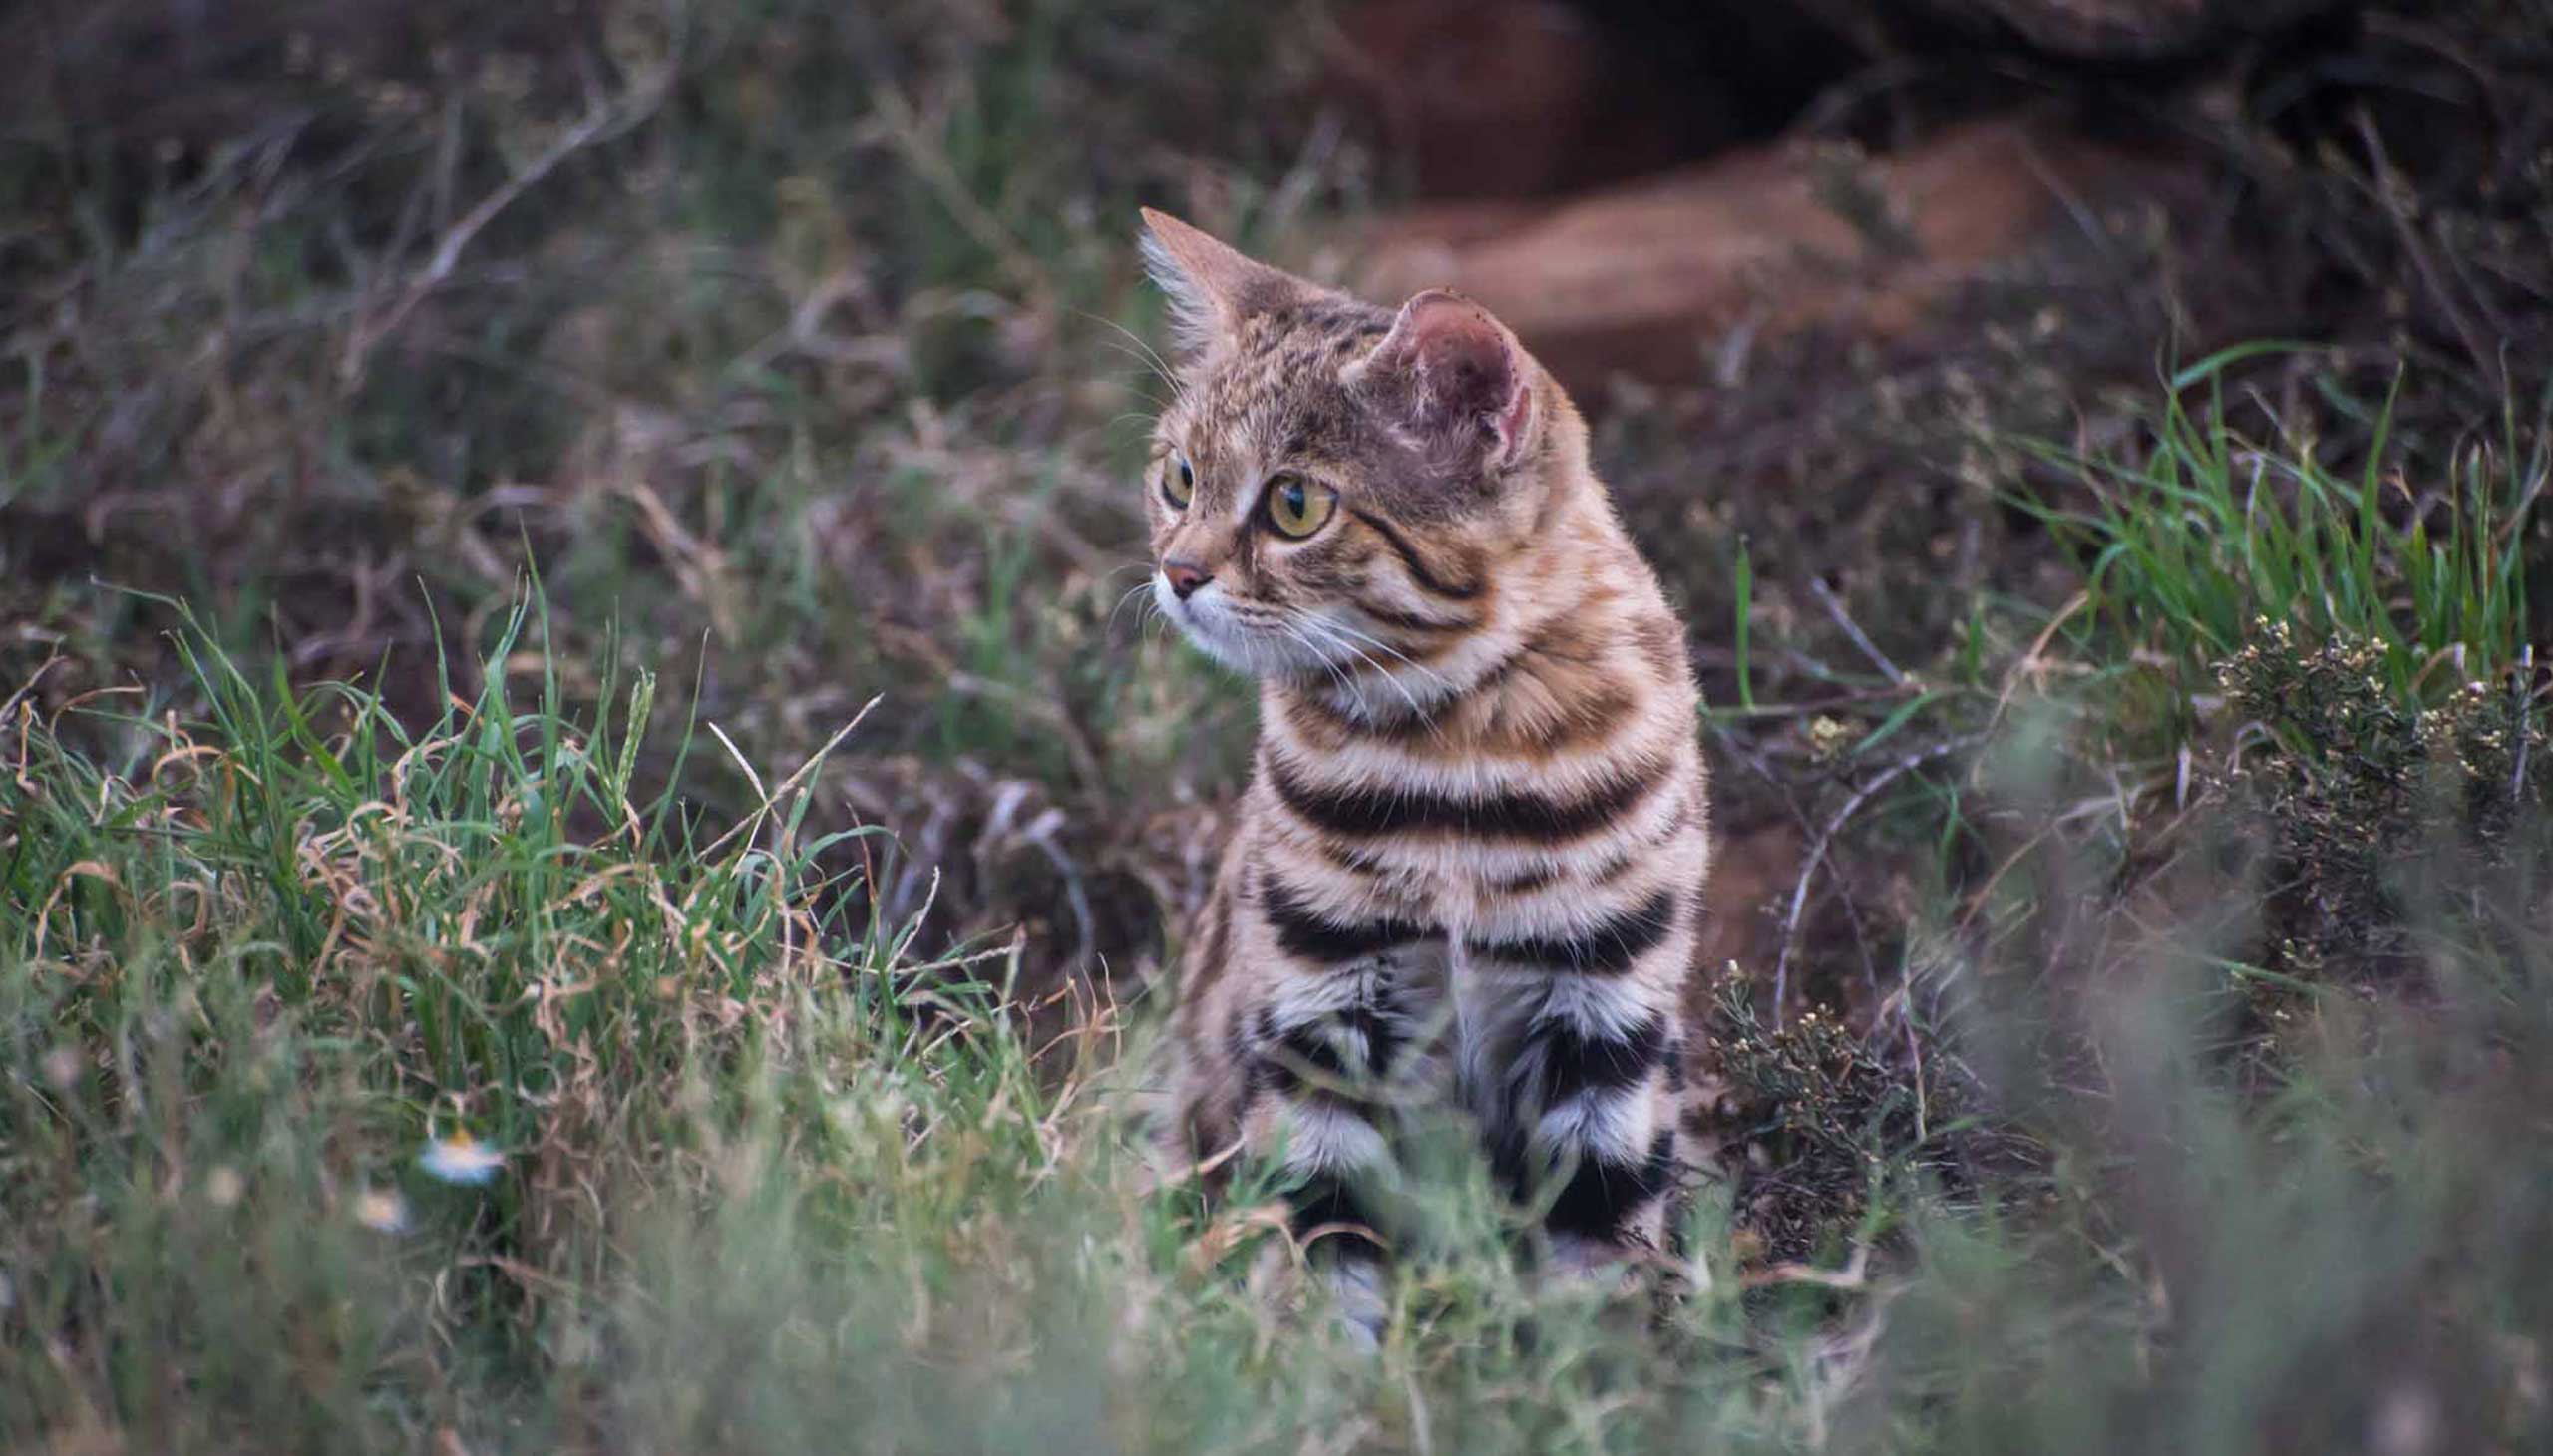 Meet the deadliest cat in the world